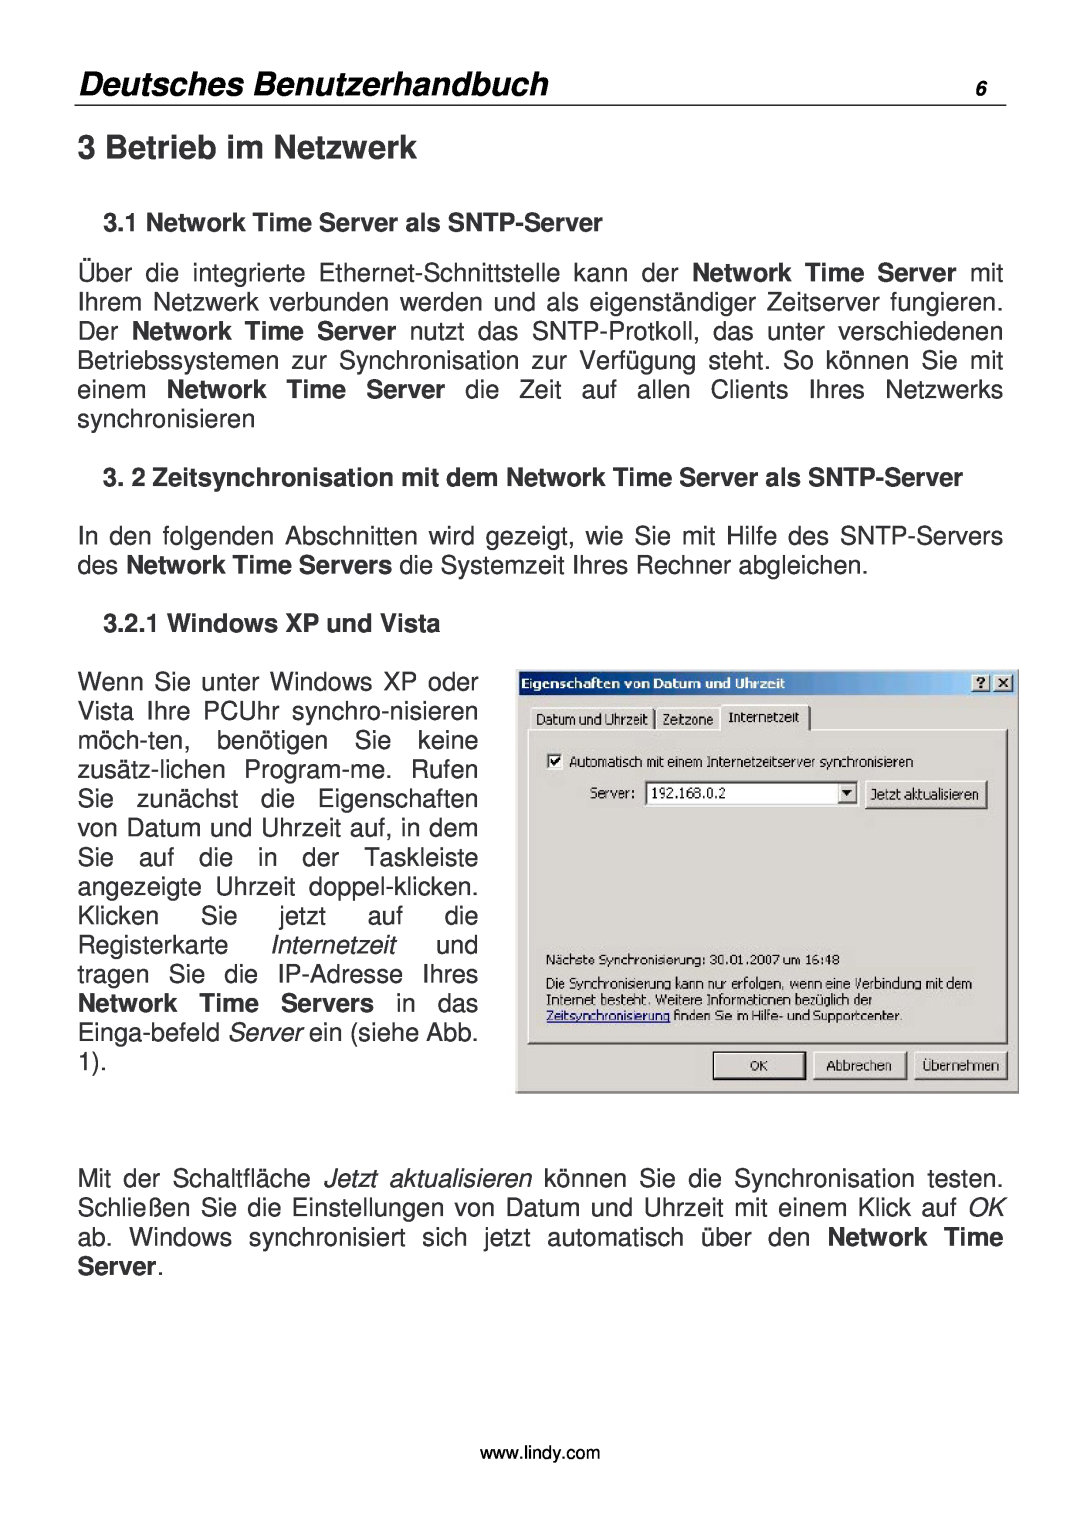 Lindy 20988 Betrieb im Netzwerk, Deutsches Benutzerhandbuch, Network Time Server als SNTP-Server, Windows XP und Vista 